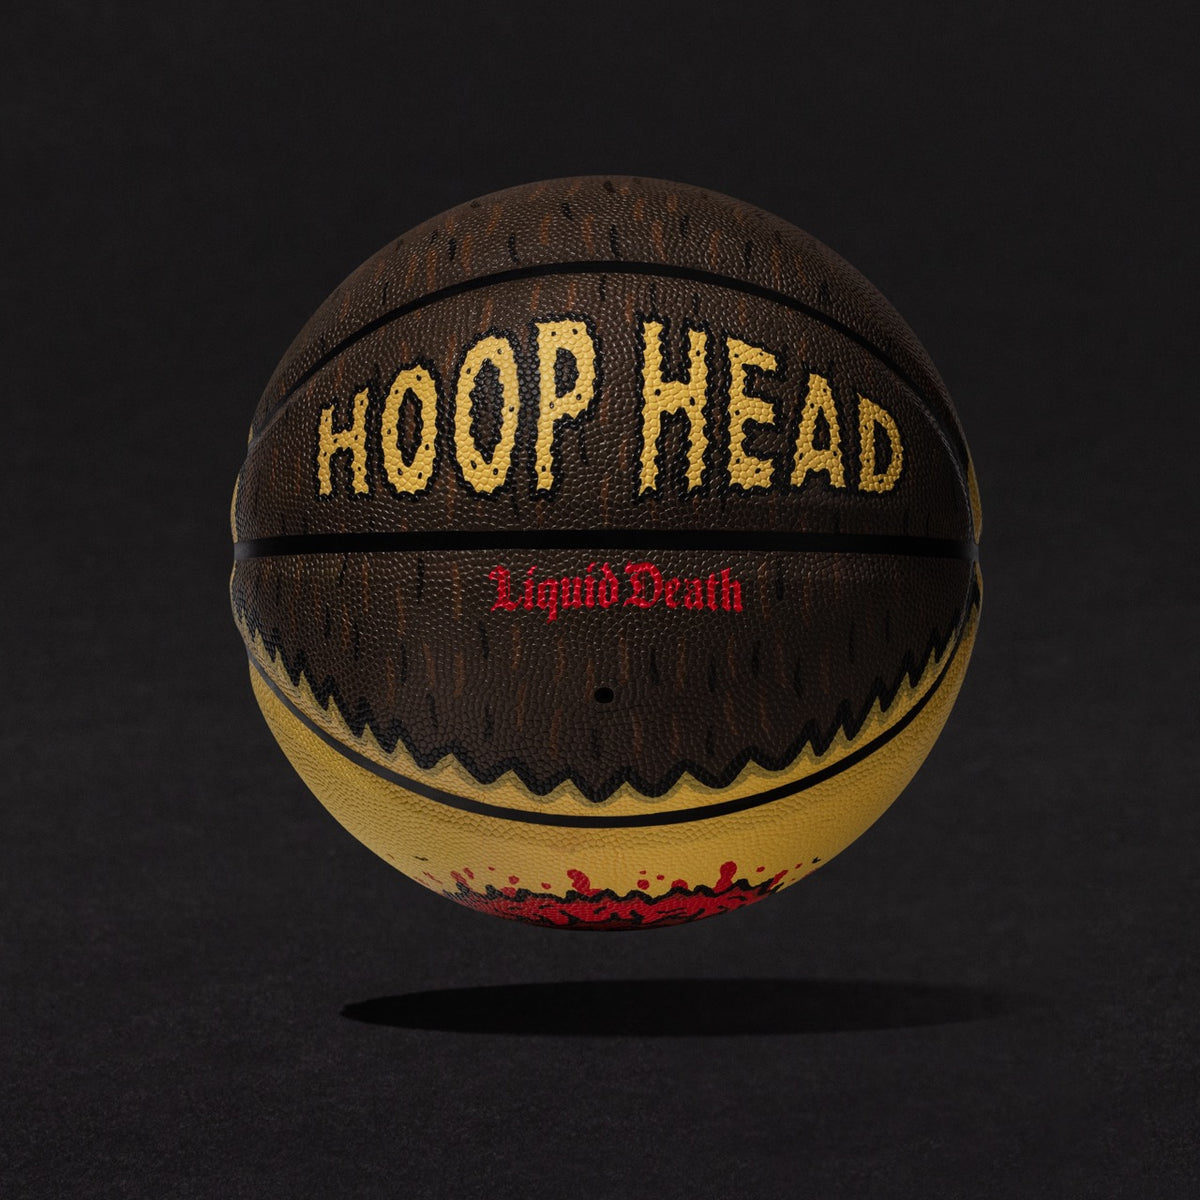 Hoop Head – Liquid Death